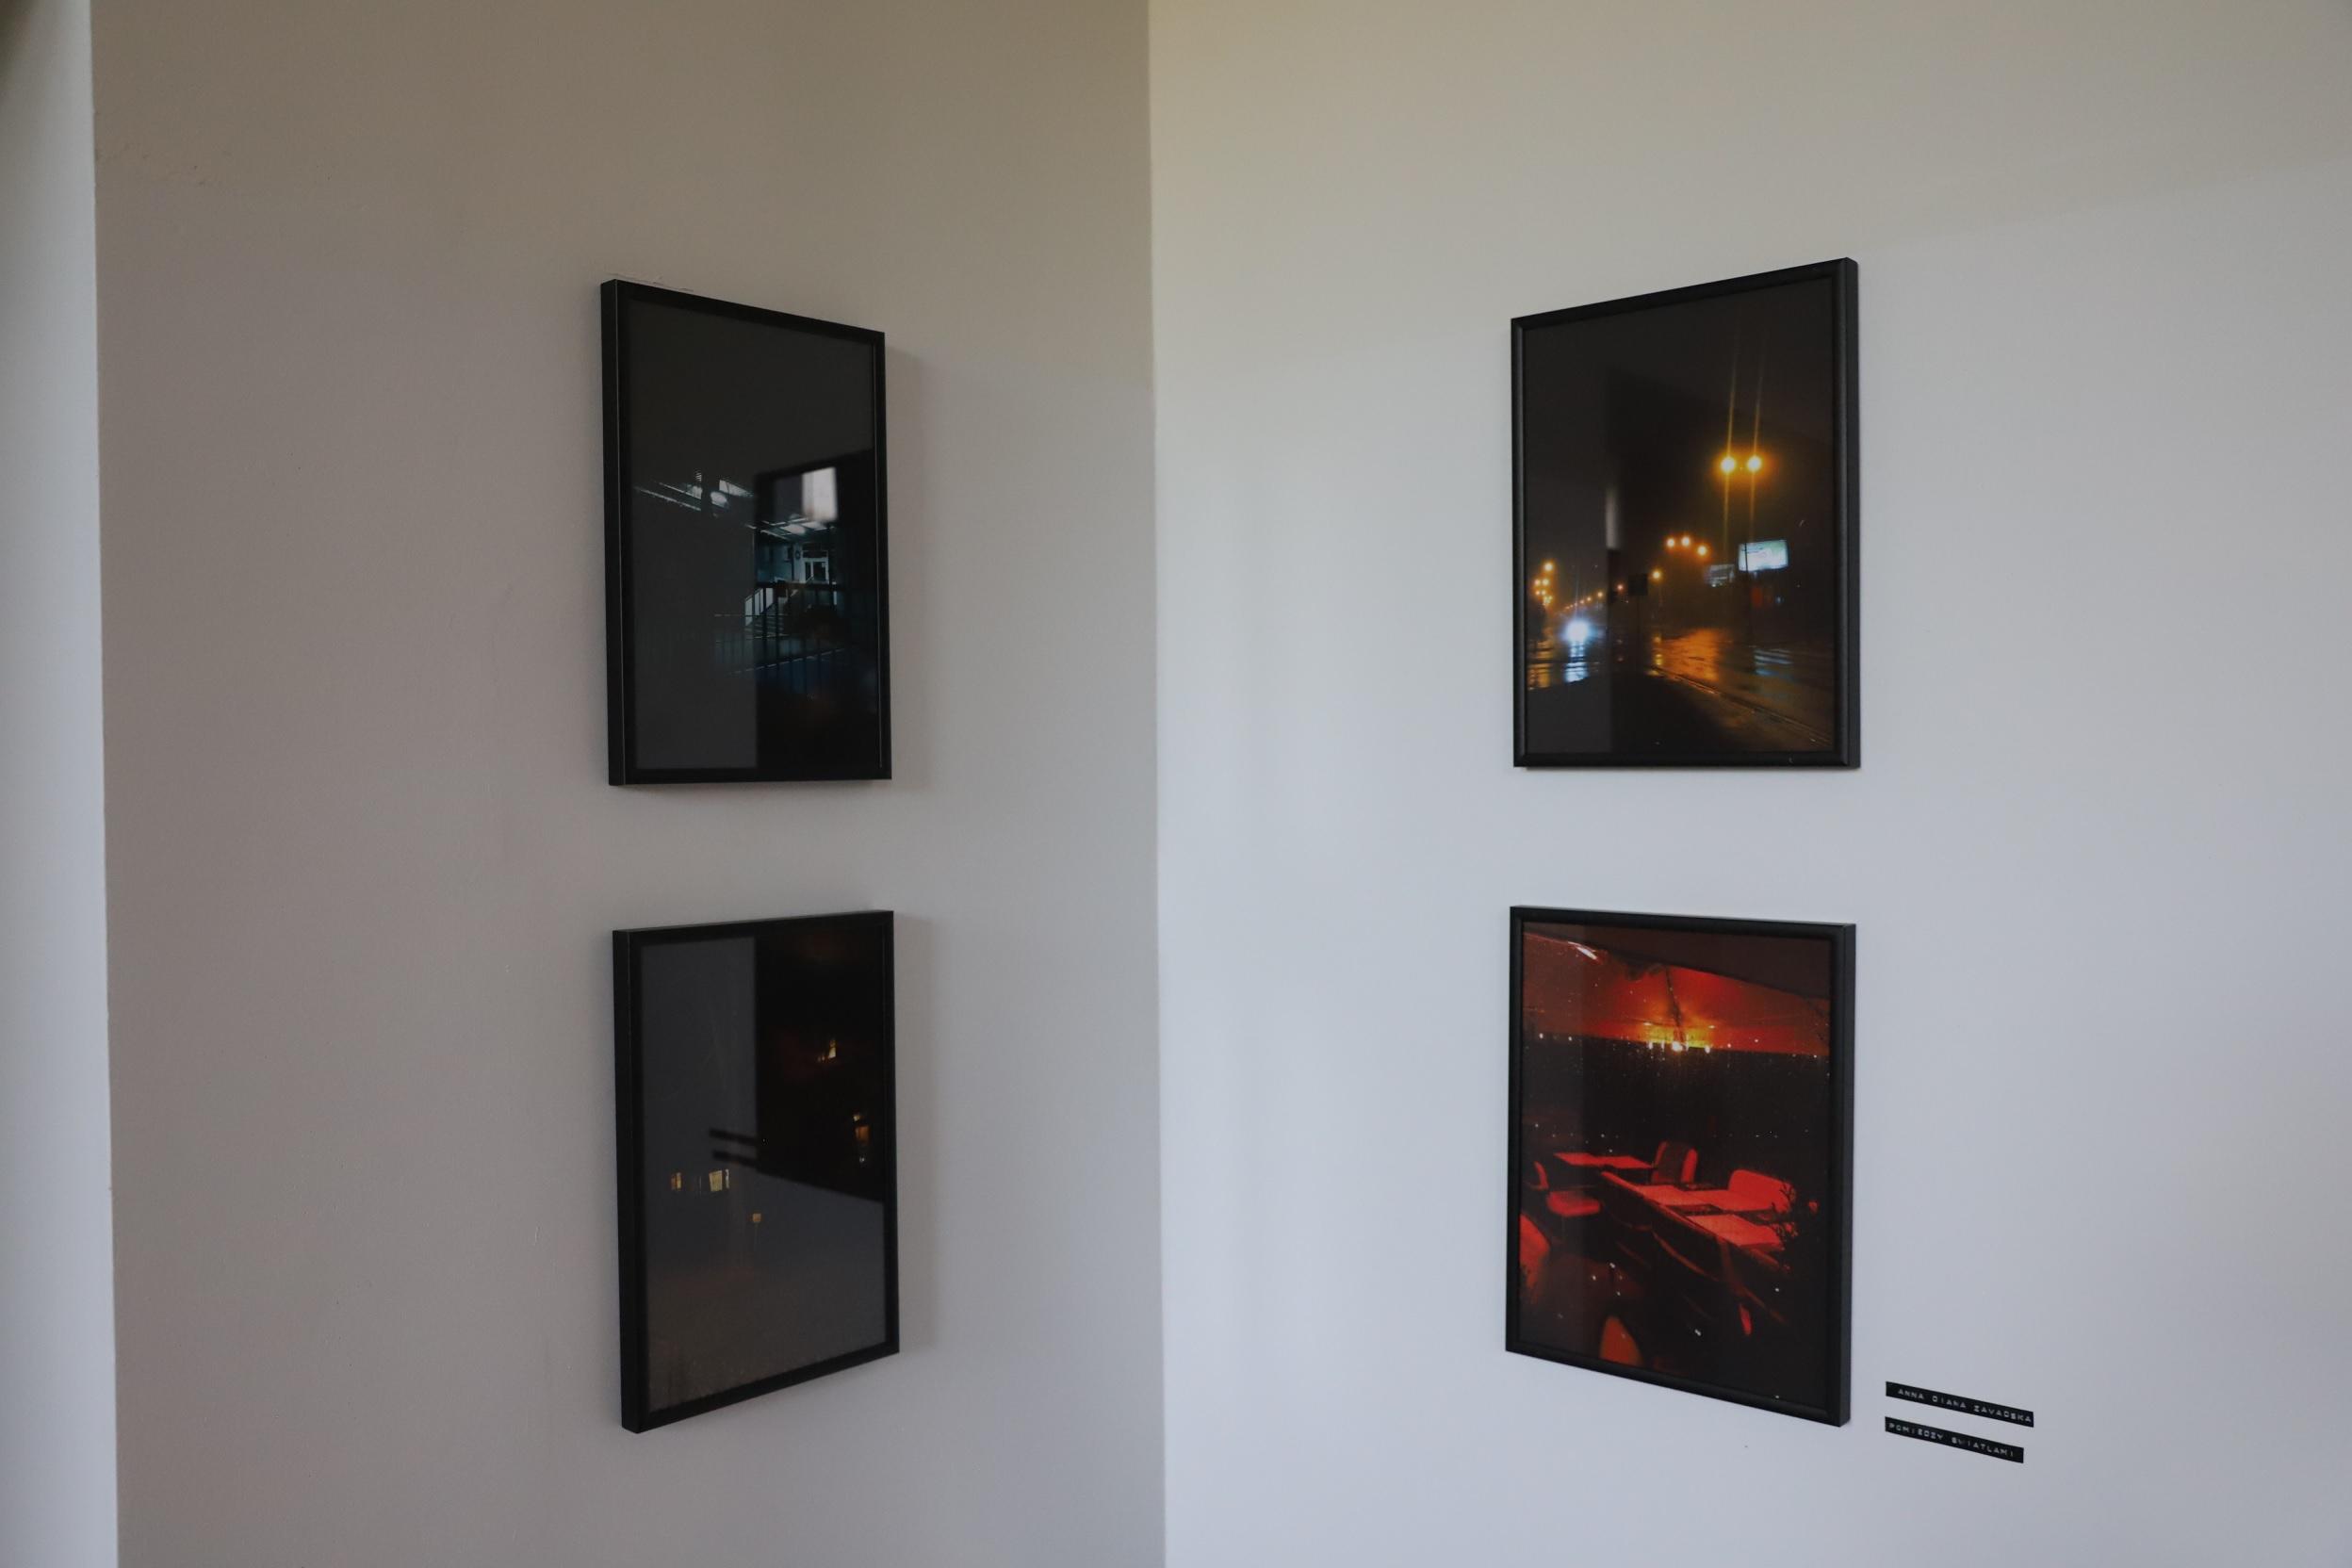 Kolekcja 4 zdjęć w czarnych ramkach przedstawiająca ulice miasta nocą